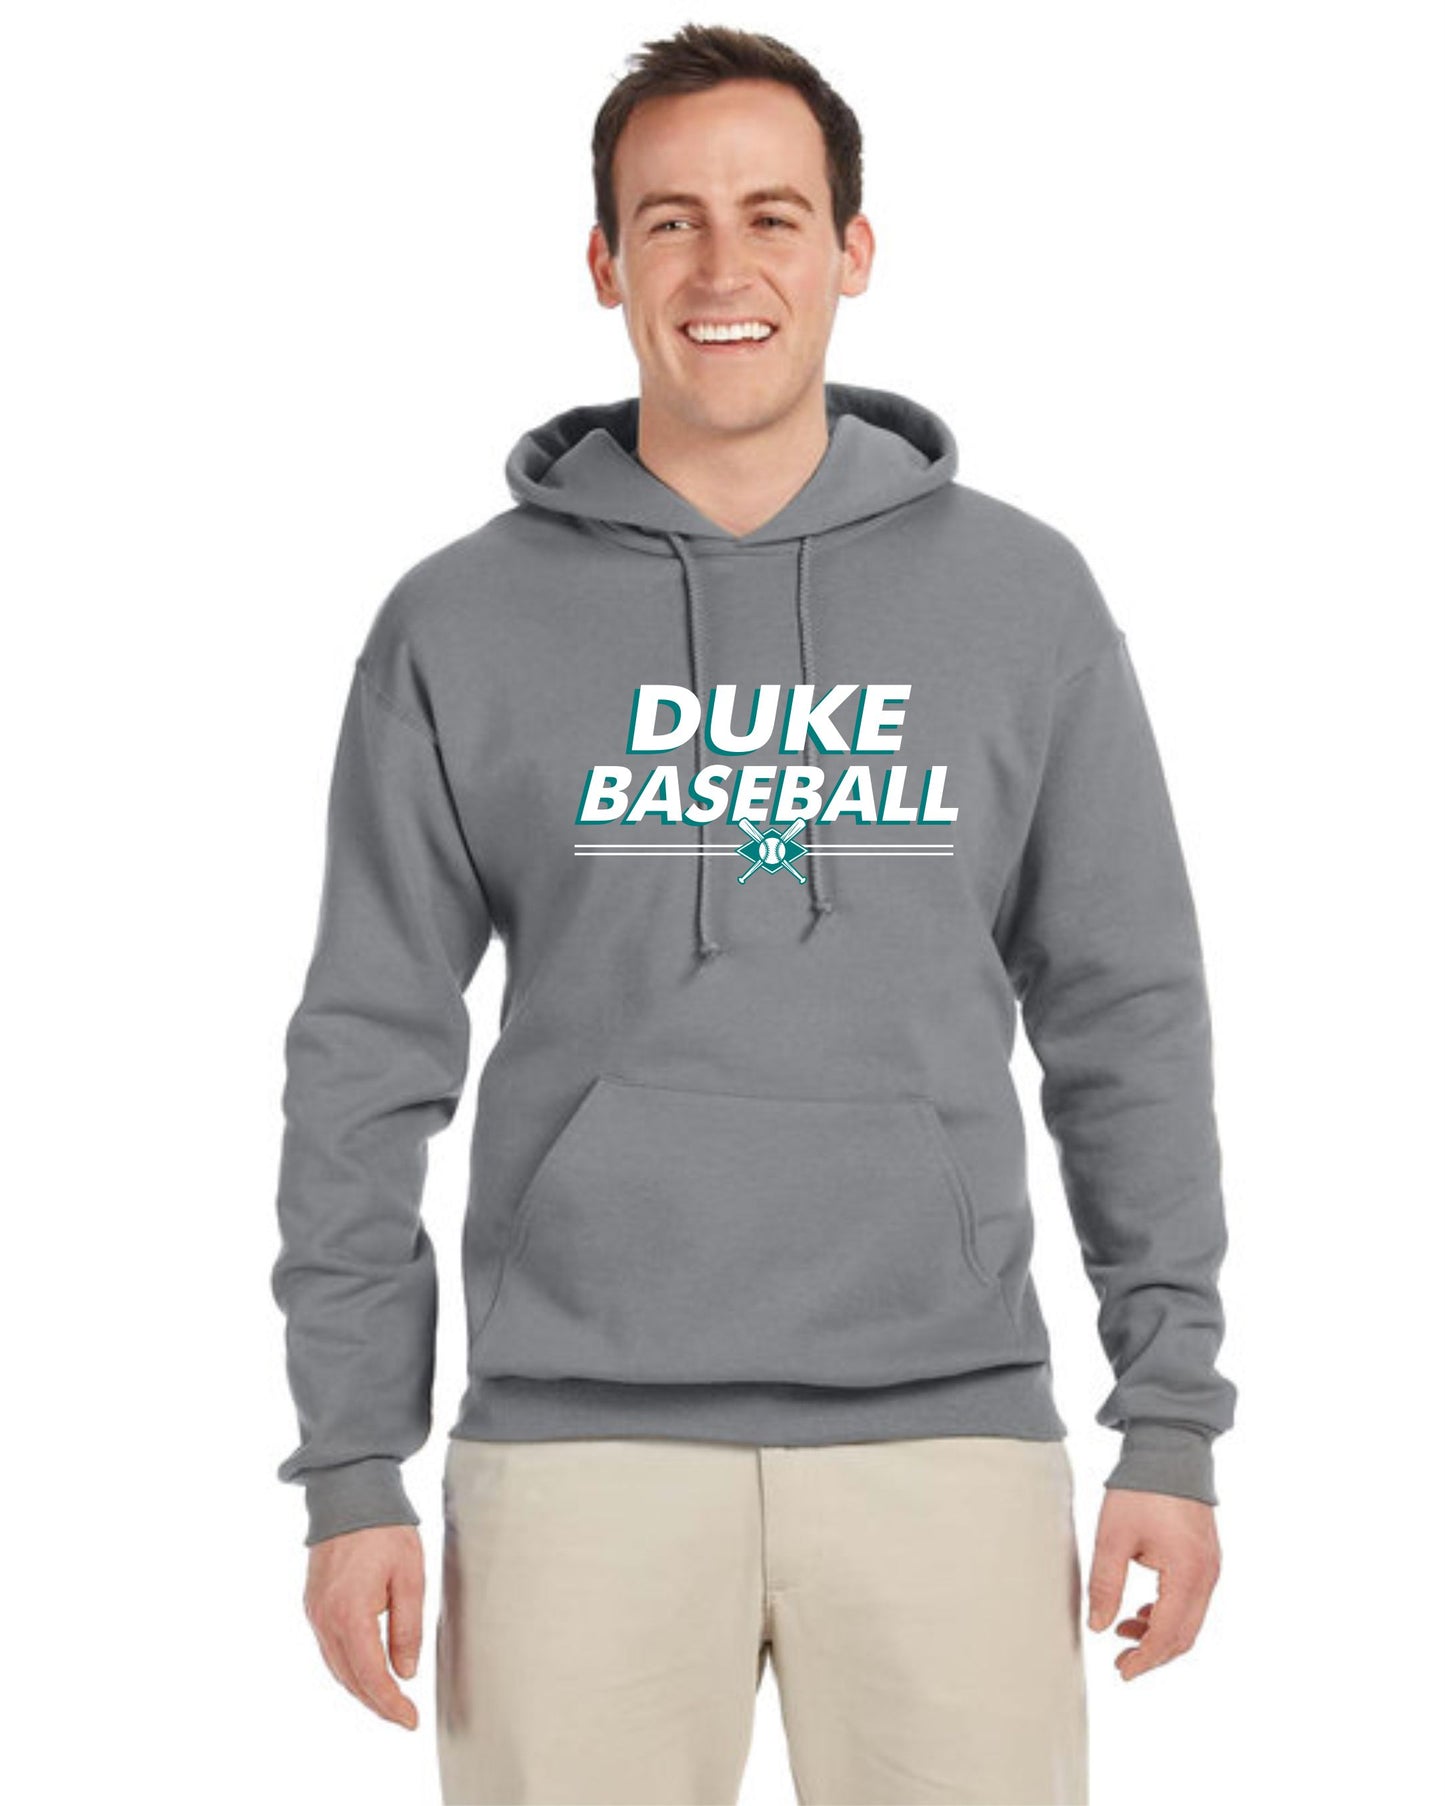 Duke Baseball Double Line 50/50 Outerwear